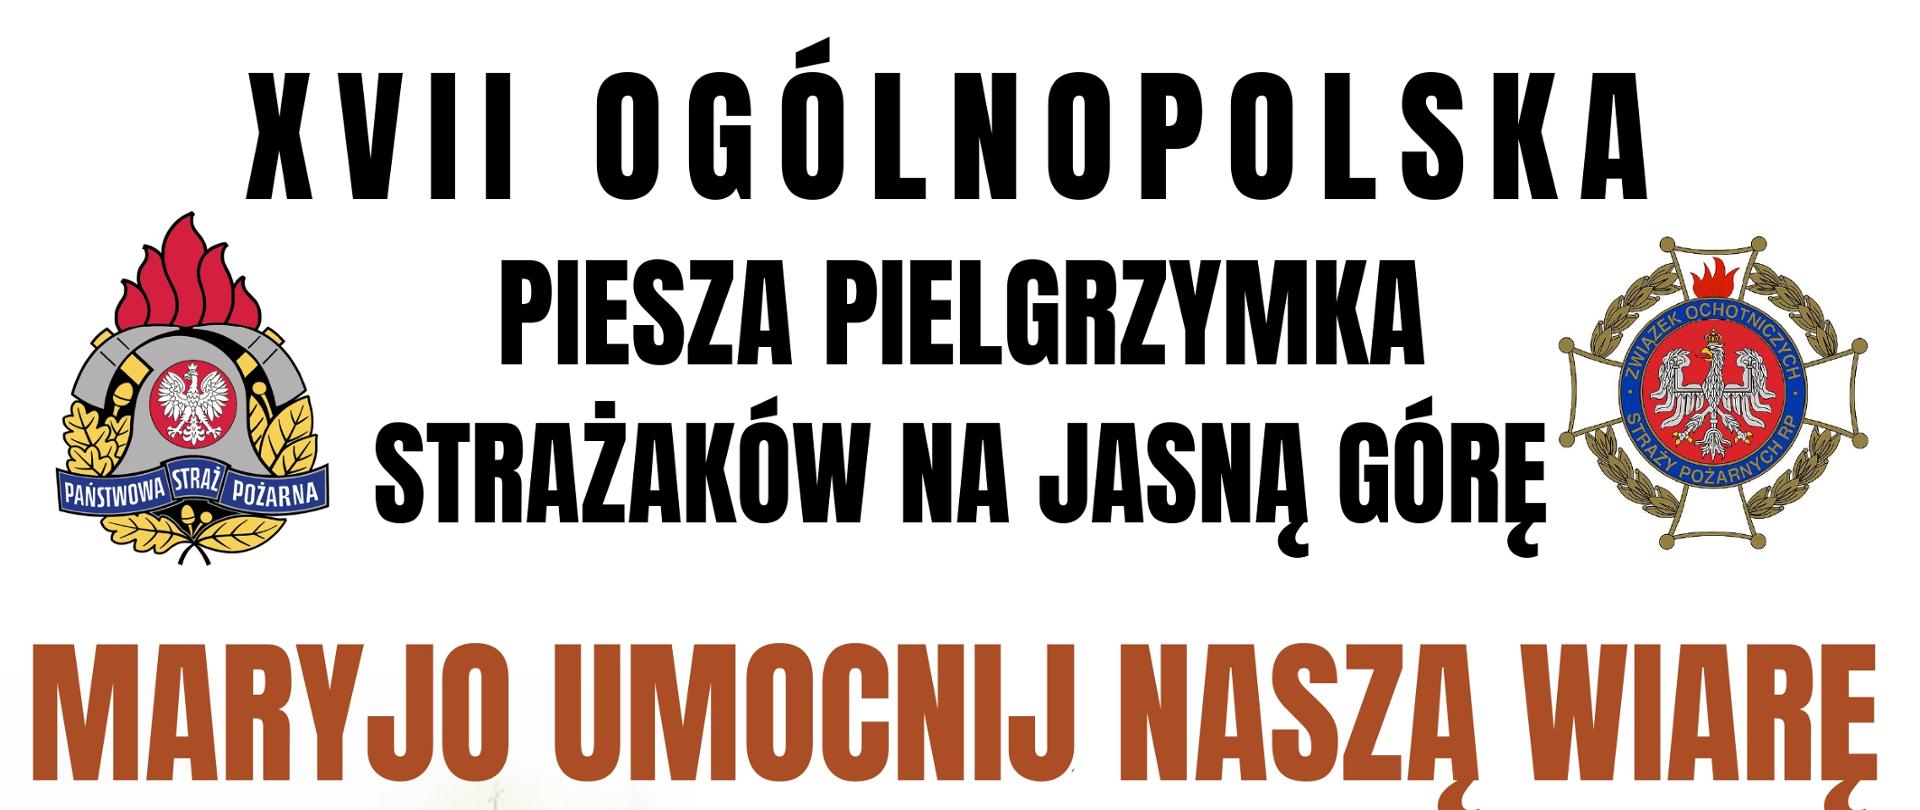 plakat XVII Ogólnopolskiej Pieszej Pielgrzymki Strażaków na Jasną Górę